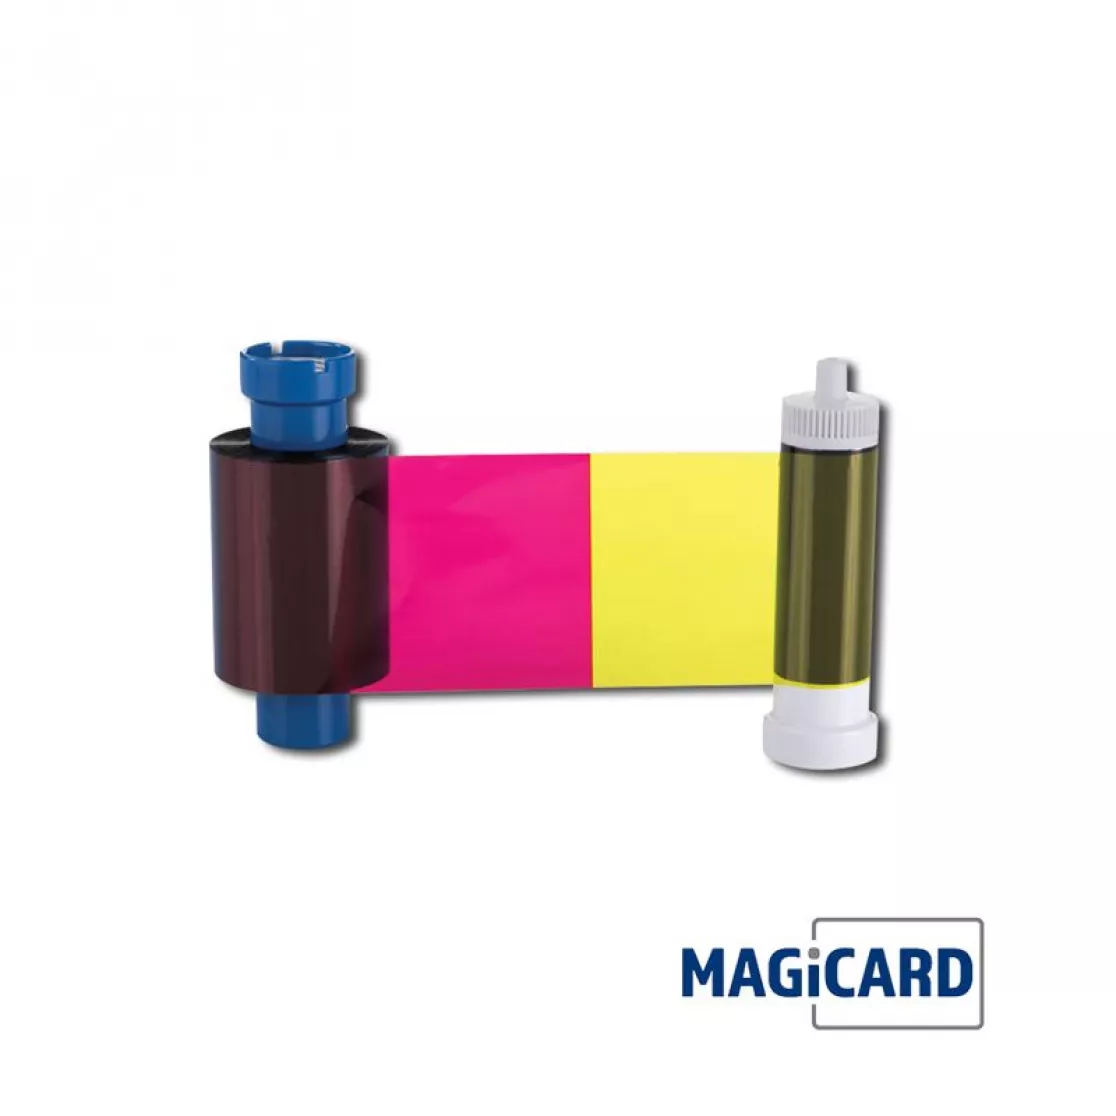 Farbband bunt für Kartendrucker Magicard 300